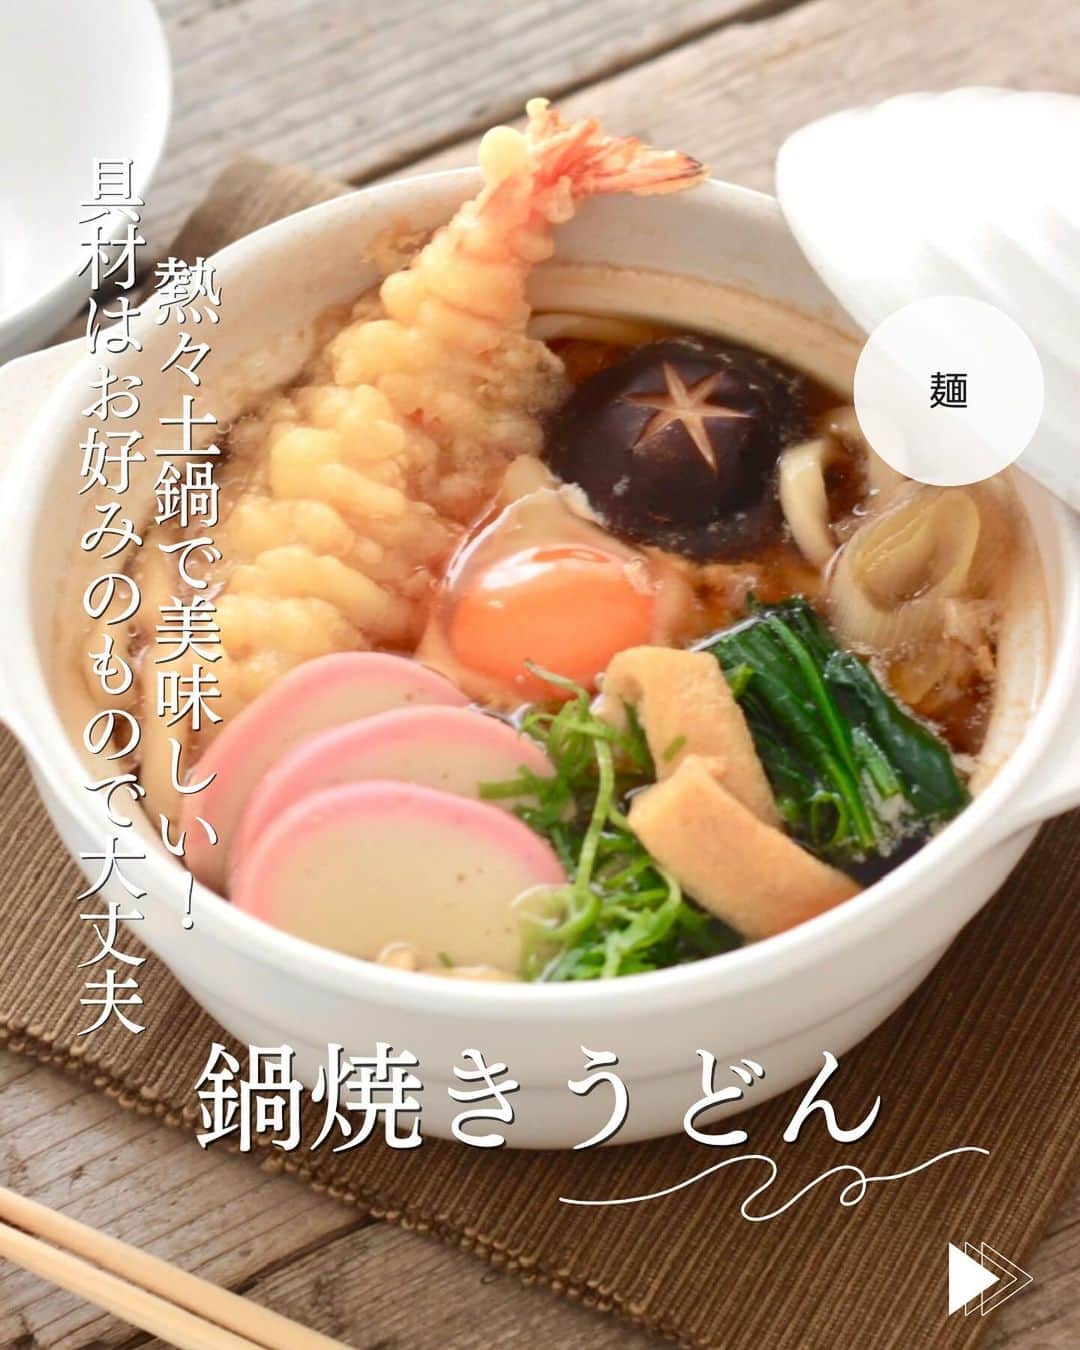 かみじともこのインスタグラム：「☆#鍋焼きうどん☆  @eiyoushino_recipe  🆔レシピID:6029662  今日のおすすめは 「鍋焼きうどん」👩🏻‍🍳です だんだん寒くなってくると食べたくなるレシピ お好みの具材と麺つゆで作れるお手軽な 鍋焼きうどんです。 天ぷらは無ければ入れなくても良いし、 揚げ玉でもじゅうぶん美味しいです。  みなさん美味しくできますように☺️ ＿＿＿＿＿＿＿＿＿＿＿＿＿＿＿＿＿＿＿＿  cookpadに毎日たくさんのつくれぽを ありがとうございます！ みなさんから届いた大切なつくれぽは 私の大切な宝物です🤍 つくれぽ送ってくれるみなさん大好きです😍 ＿＿＿＿＿＿＿＿＿＿＿＿＿＿＿＿＿＿＿＿＿  🍳作られたお料理はぜひ🍳 【 #栄養士のれしぴ 】 【 #栄養士のれしぴのレシピ 】 を付けてくださいね✨ (れしぴはひらがなです✍️) ストーリーズで ご紹介させていただく事があります♪ ＿＿＿＿＿＿＿＿＿＿＿＿＿＿＿＿＿＿＿＿＿＿  お知らせ❶  YouTubeはじめました ストーリーズ、ハイライトのリンクからどうぞ ▶︎▶︎▶︎ @eiyoushino_recipe  最近の動画では 【絶品！ねぎ塩だれ5選】 【サラダ作りにおすすめのキッキン道具5選】 を紹介しています。 ＿＿＿＿＿＿＿＿＿＿＿＿＿＿＿＿＿＿＿＿＿＿  お知らせ❷  楽天ROOMに 愛用のキッチン用品や、便利な道具 美味しかった物や、食器など載せてます♪ ＿＿＿＿＿＿＿＿＿＿＿＿＿＿＿＿＿＿＿＿＿＿  お知らせ❸  新刊【☆栄養士のれしぴ☆黄金だれ】 宝島社より好評販売中！ ＿＿＿＿＿＿＿＿＿＿＿＿＿＿＿＿＿＿＿＿＿＿＿  #栄養士のれしぴ #栄養士のれしぴのレシピ  #うどん #うどんレシピ #土鍋 #麺 #簡単副菜 #簡単料理　 #基本の料理　 #基本のレシピ　 #家庭料理　 #定番料理 #おうちごはん #レシピ #簡単レシピ #暮らし #暮らしを楽しむ #クックパッド　 #cookpad #recipe #cooking #料理 #器 #30代　#40代  #50代　#60代 #youtubeはじめました #楽天room」